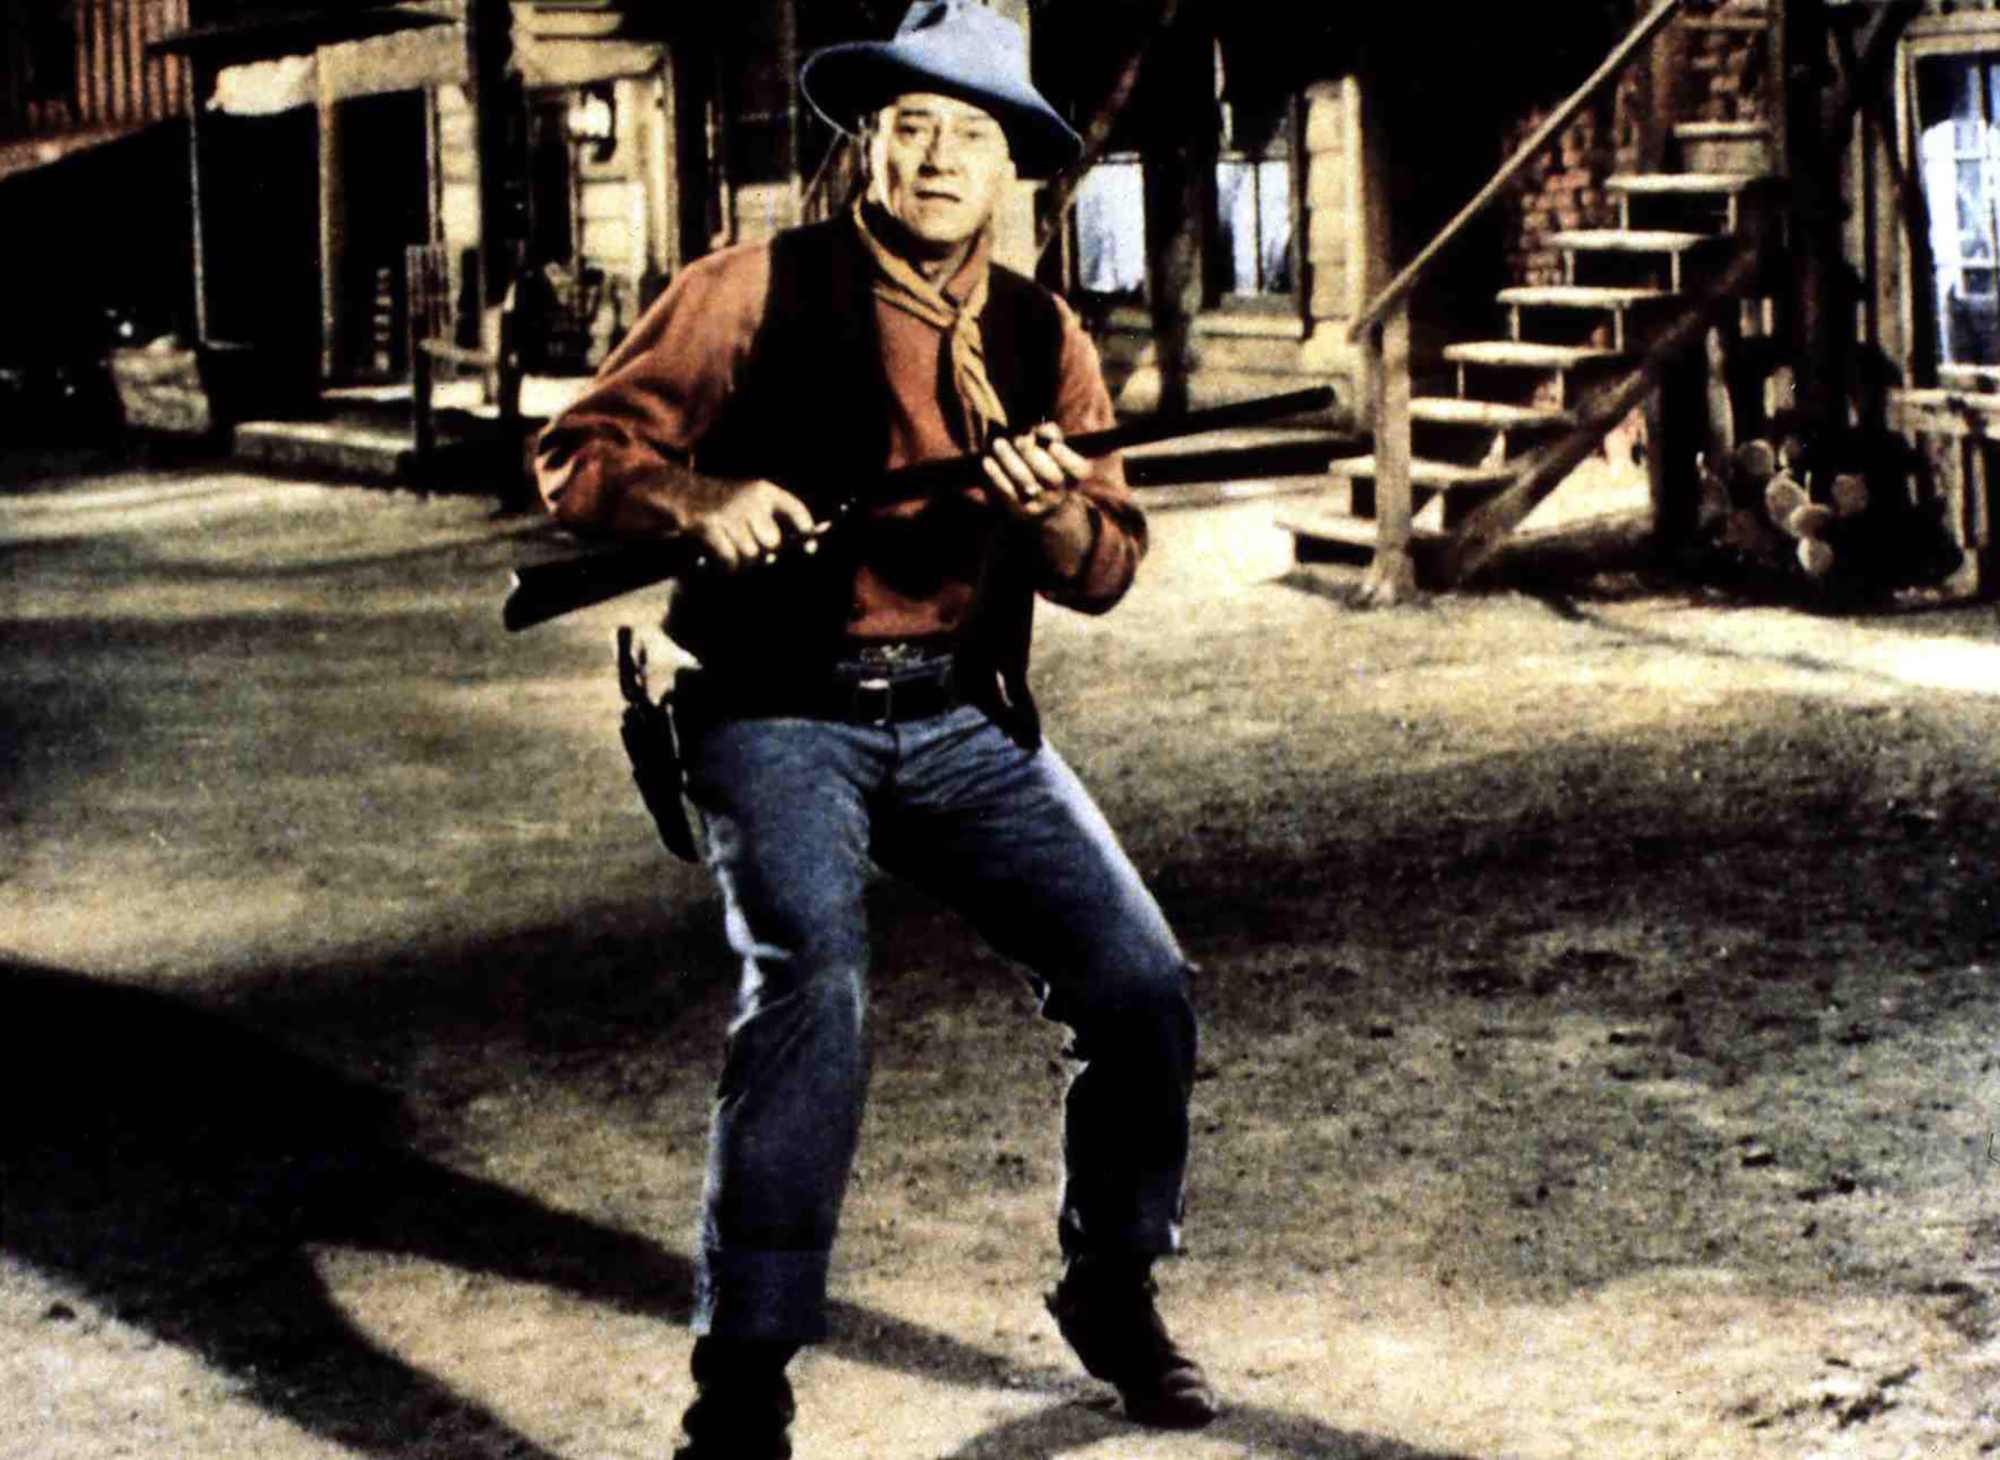 'Rio Bravo' John Wayne as Sheriff John T. Chance holding his gun wearing a Western costume looking surprised